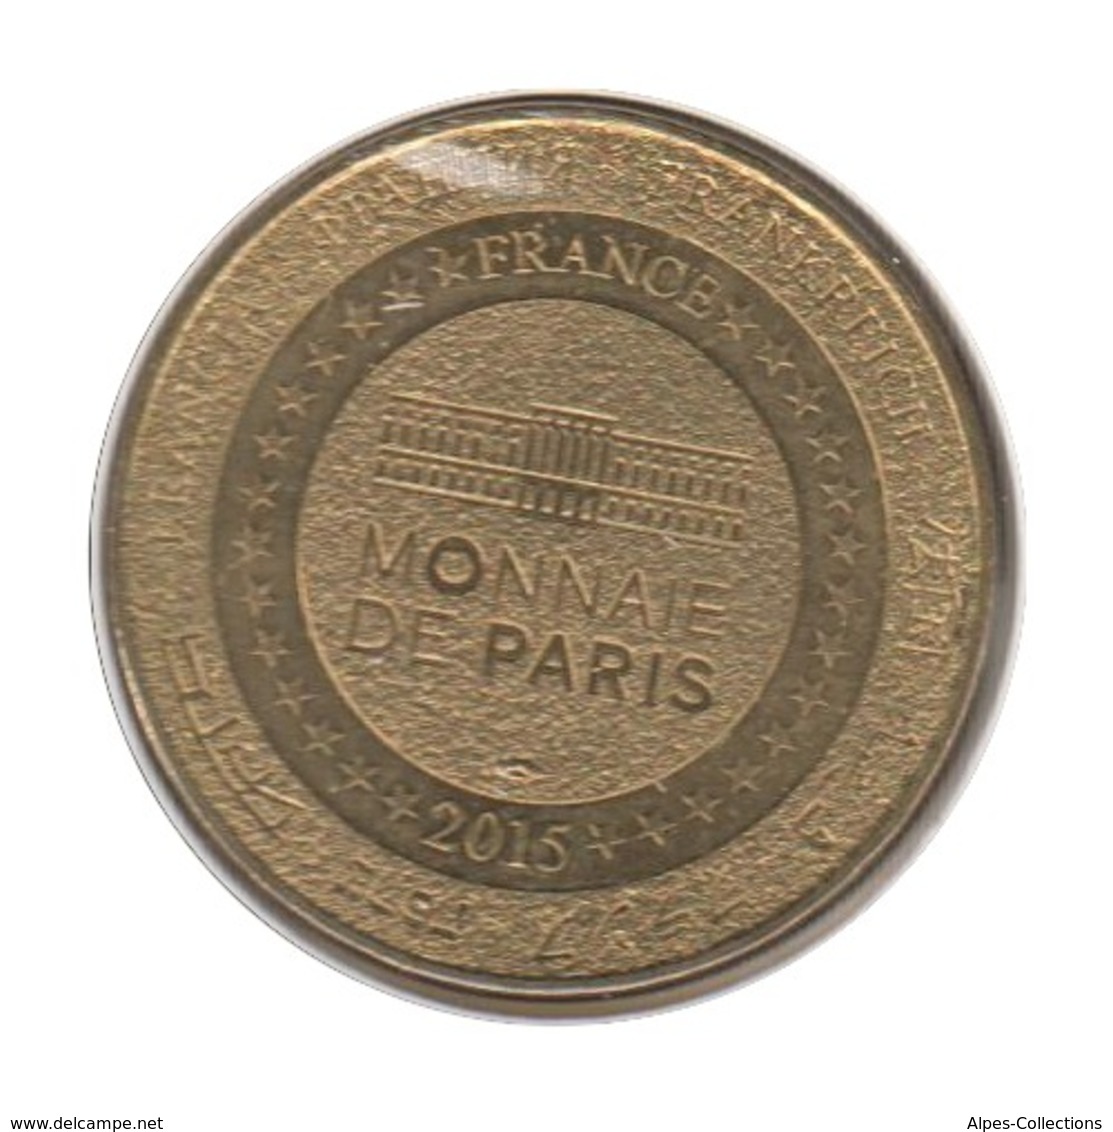 13001 - MEDAILLE TOURISTIQUE MONNAIE DE PARIS 13 - Aubagne - La Cigale - 2015 - 2015